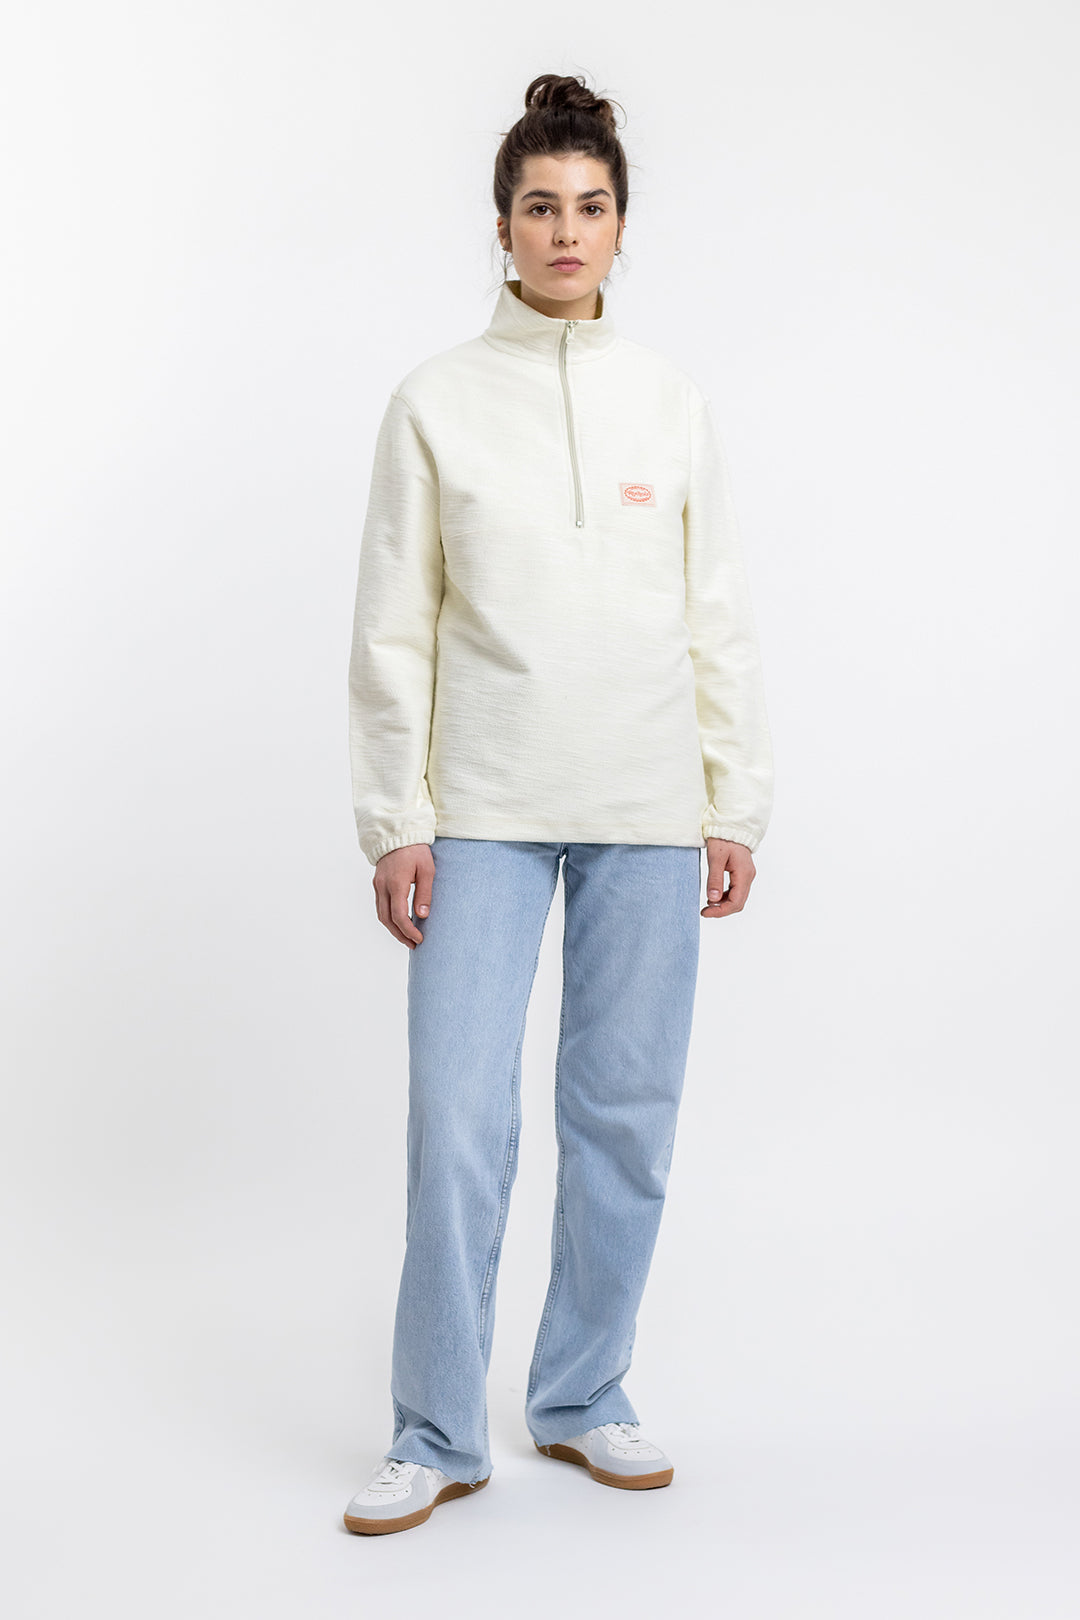 Weisses Reissverschluss-Sweatshirt Divided aus 100% Baumwolle von Rotholz